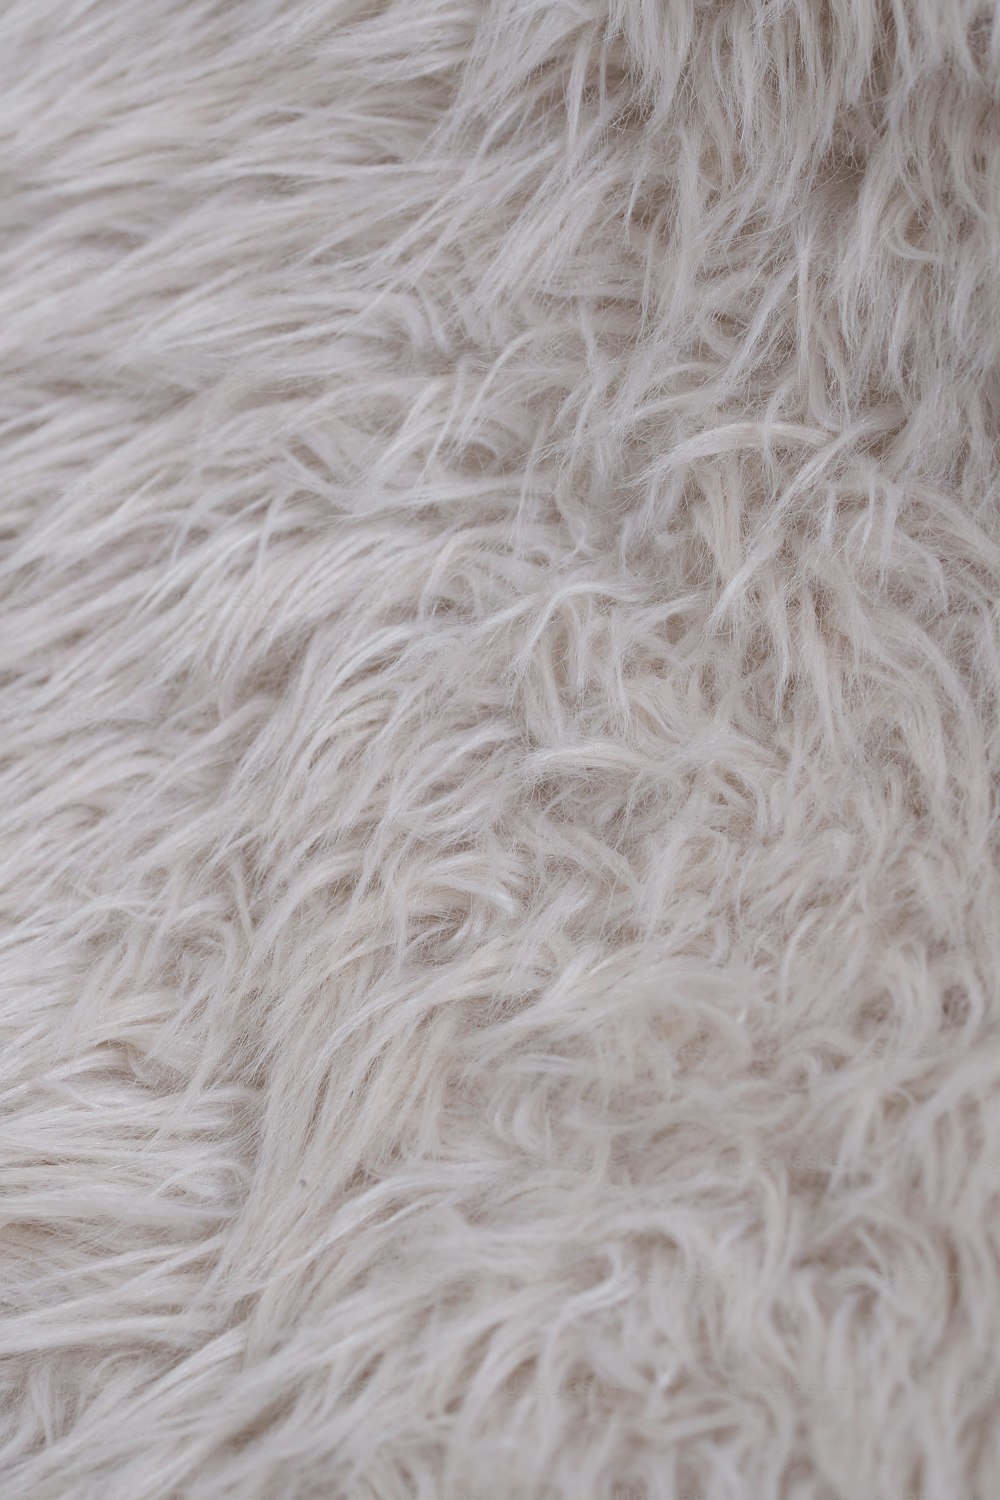 um close up de uma textura de pele branca